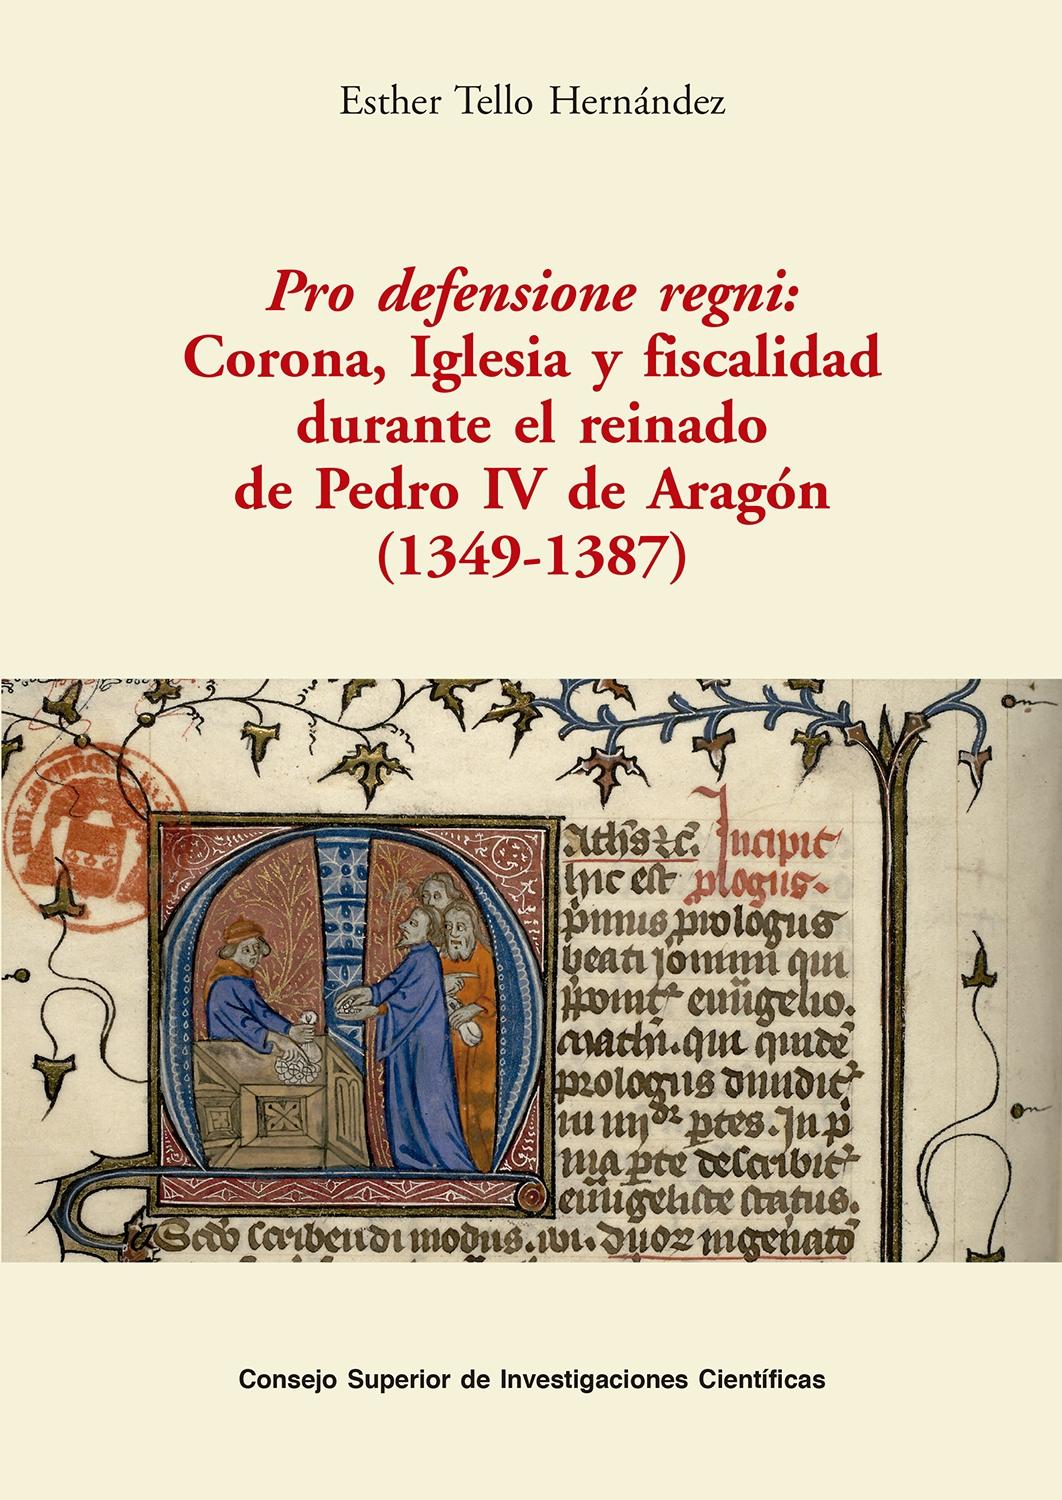 Pro defensione regni: Corona, Iglesia y fiscalidad durante el reinado de Pedro IV de Aragón "(1349-1387)"